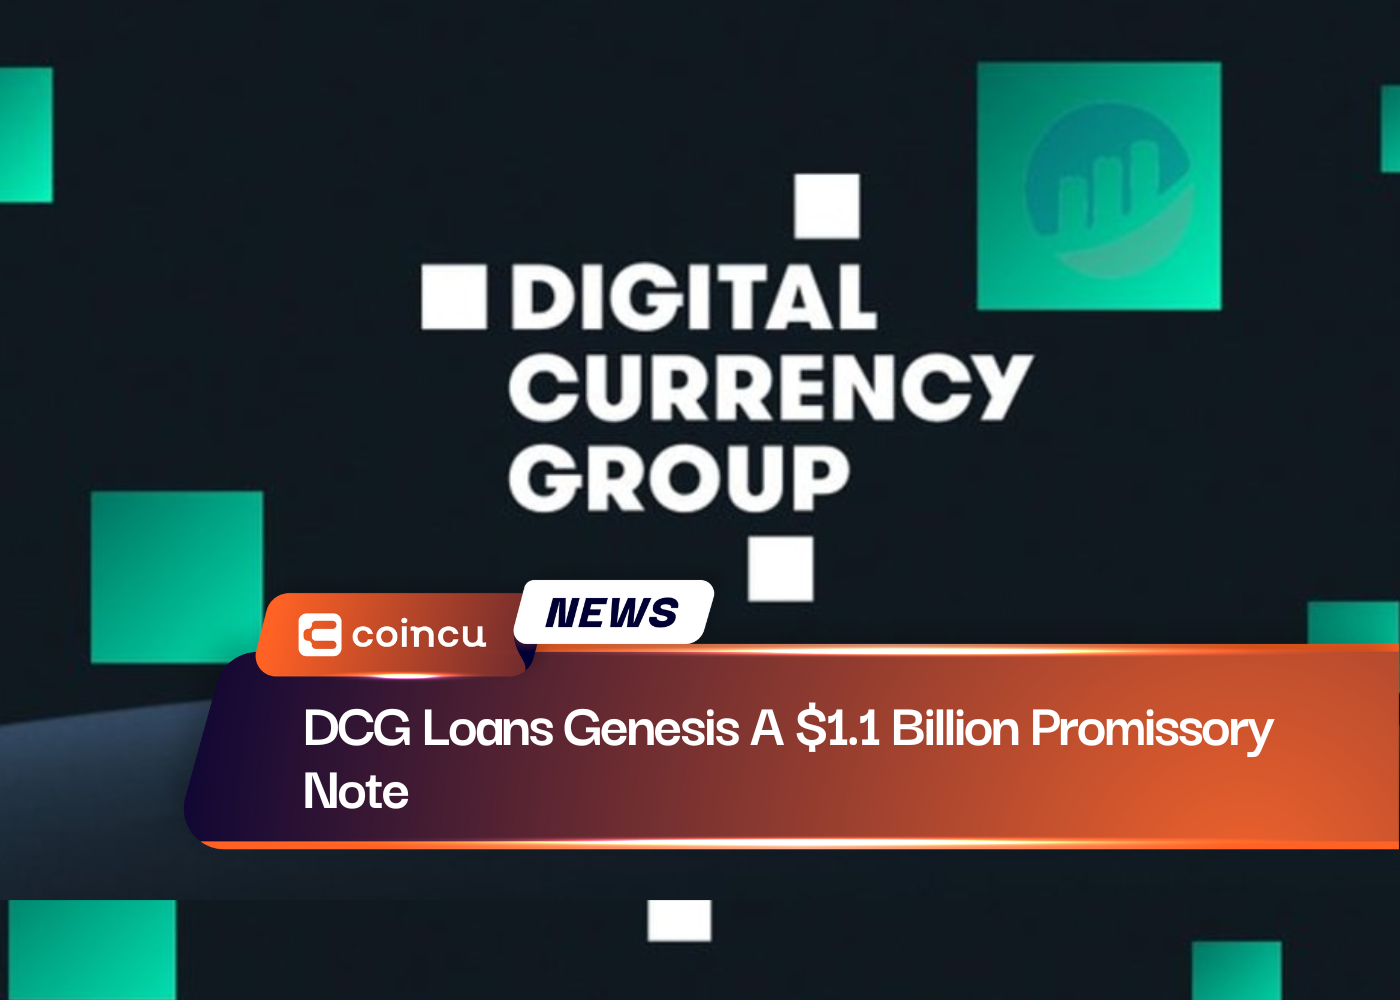 DCG Loans Genesis A $1.1 Billion Promissory Note